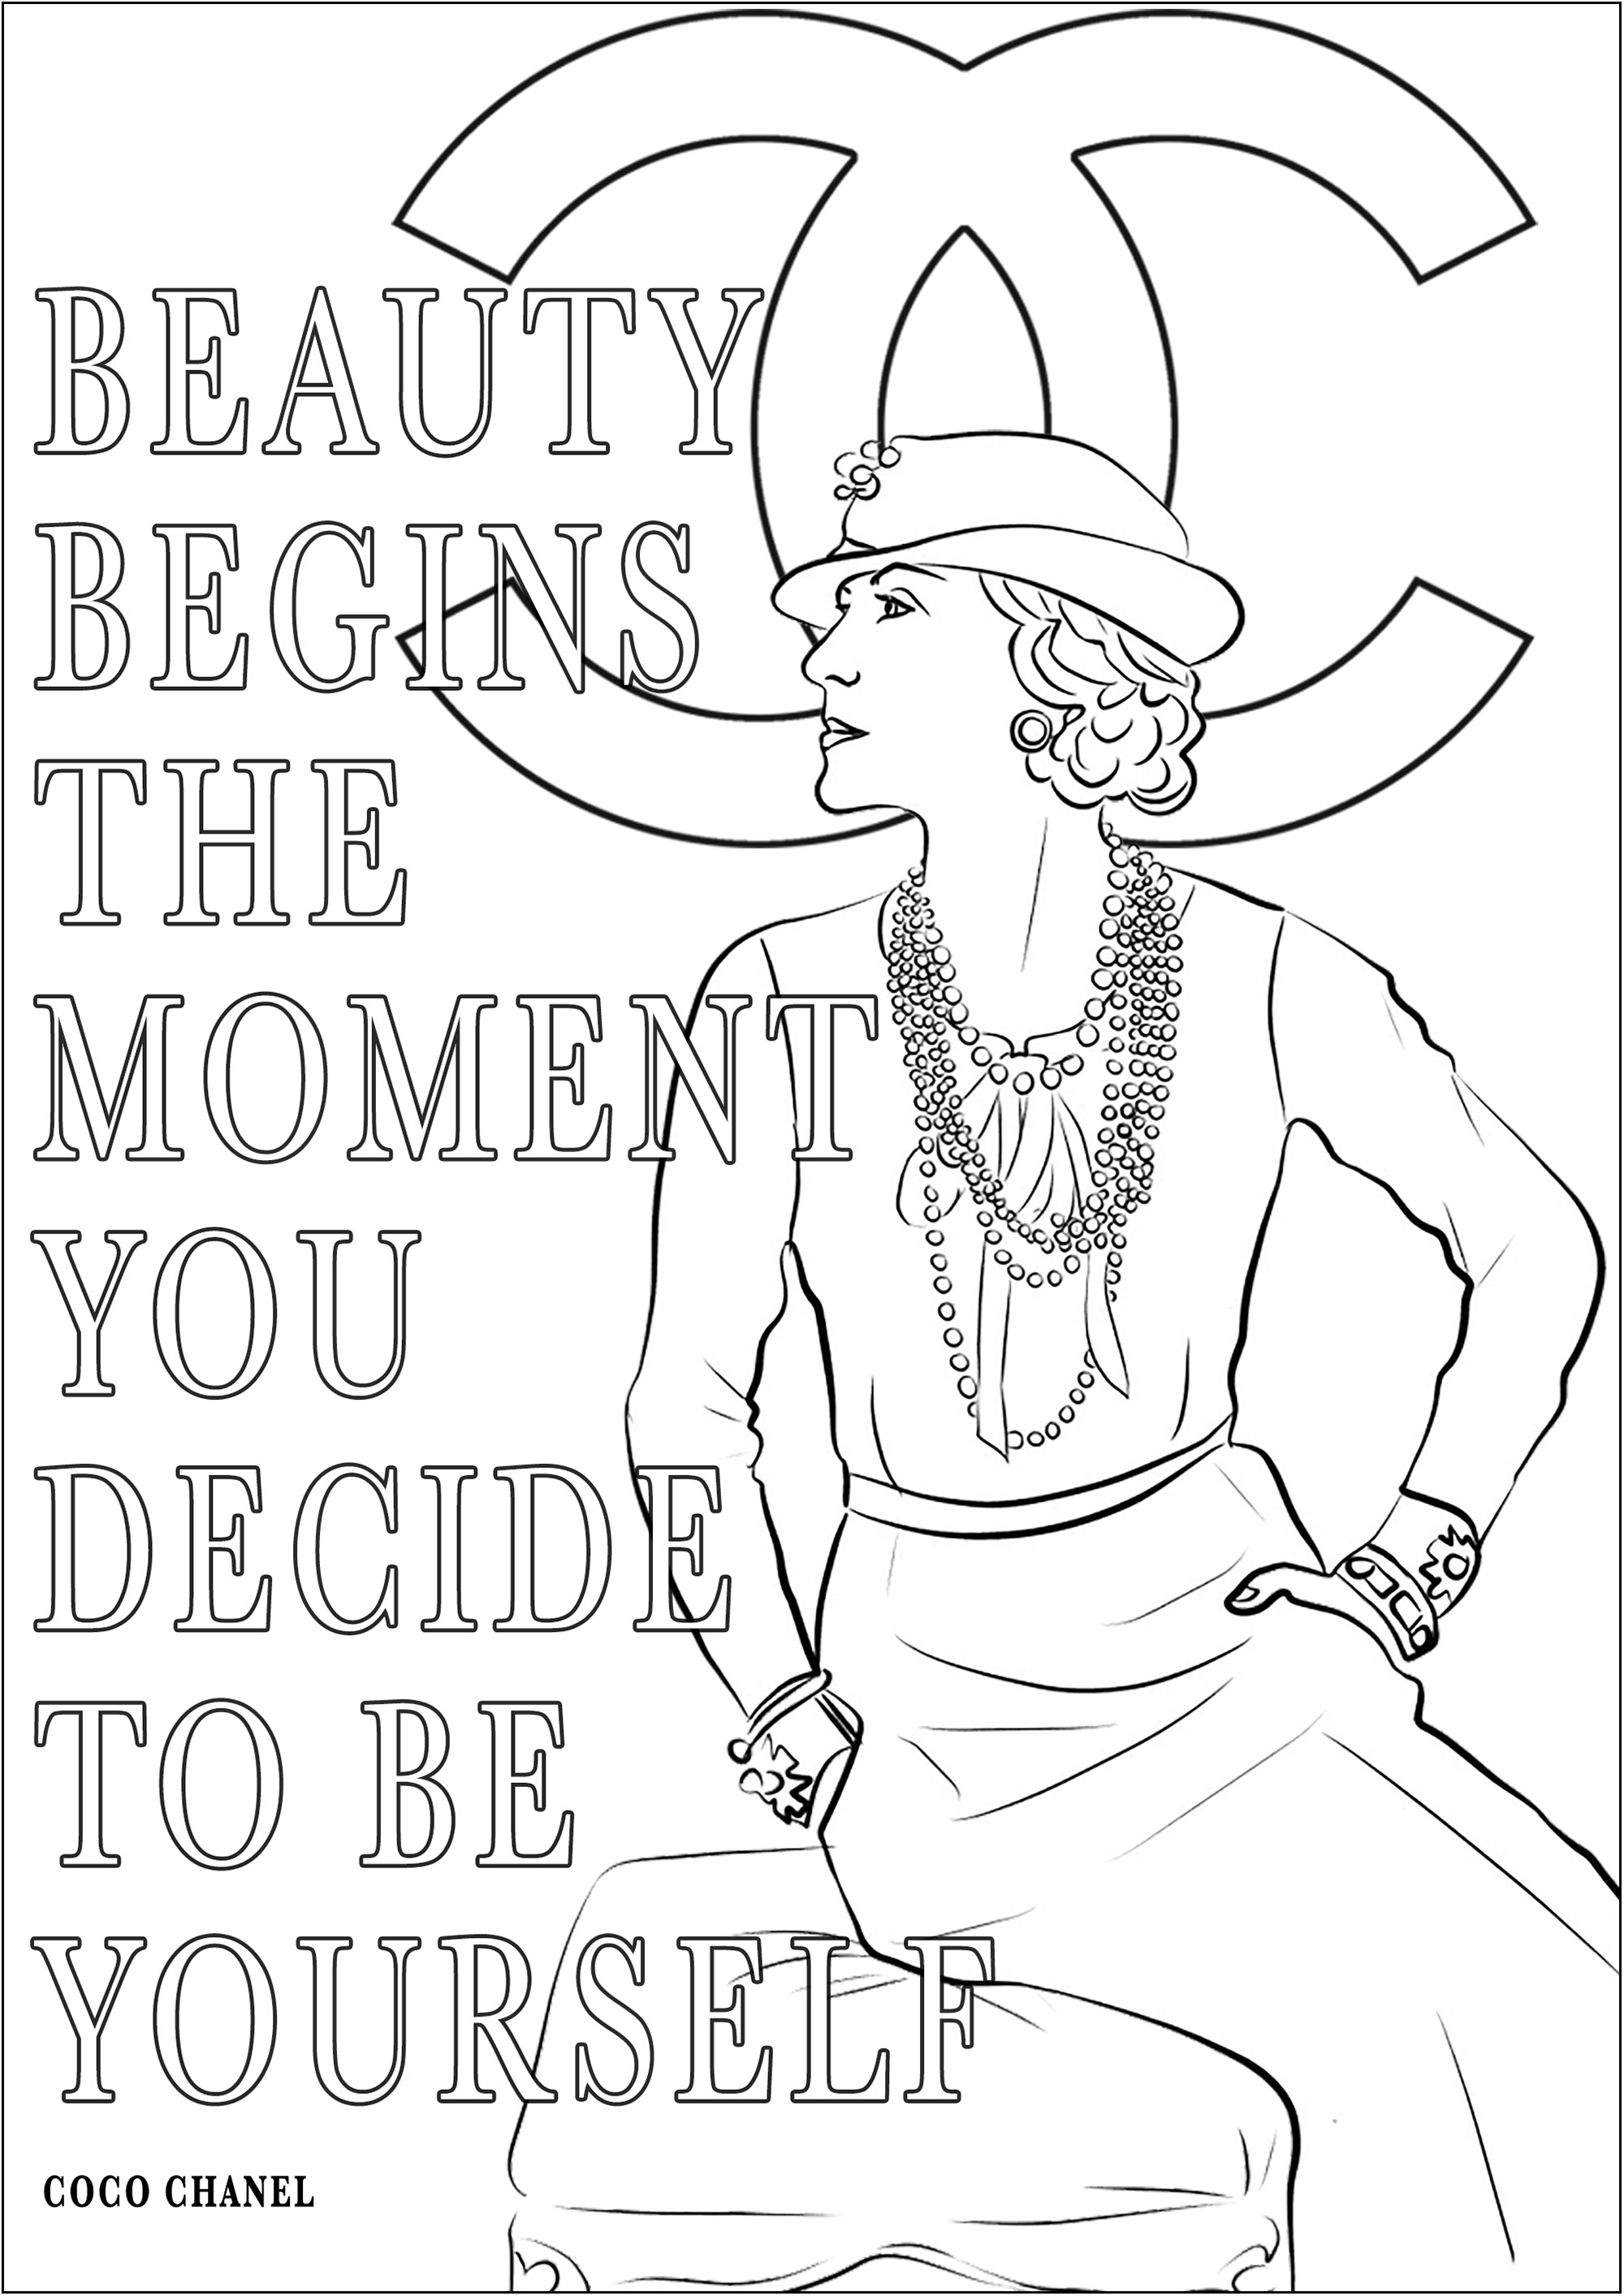 Coco Chanel e a sua frase 'A beleza começa no momento em que decidimos ser nós próprios'. Significa 'A beleza começa no momento em que decides ser tu próprio'.Coco Chanel, nascida em 1883, foi uma revolucionária designer de moda francesa que transformou a indústria com as suas criações intemporais, como o famoso fato Chanel e o pequeno vestido preto.